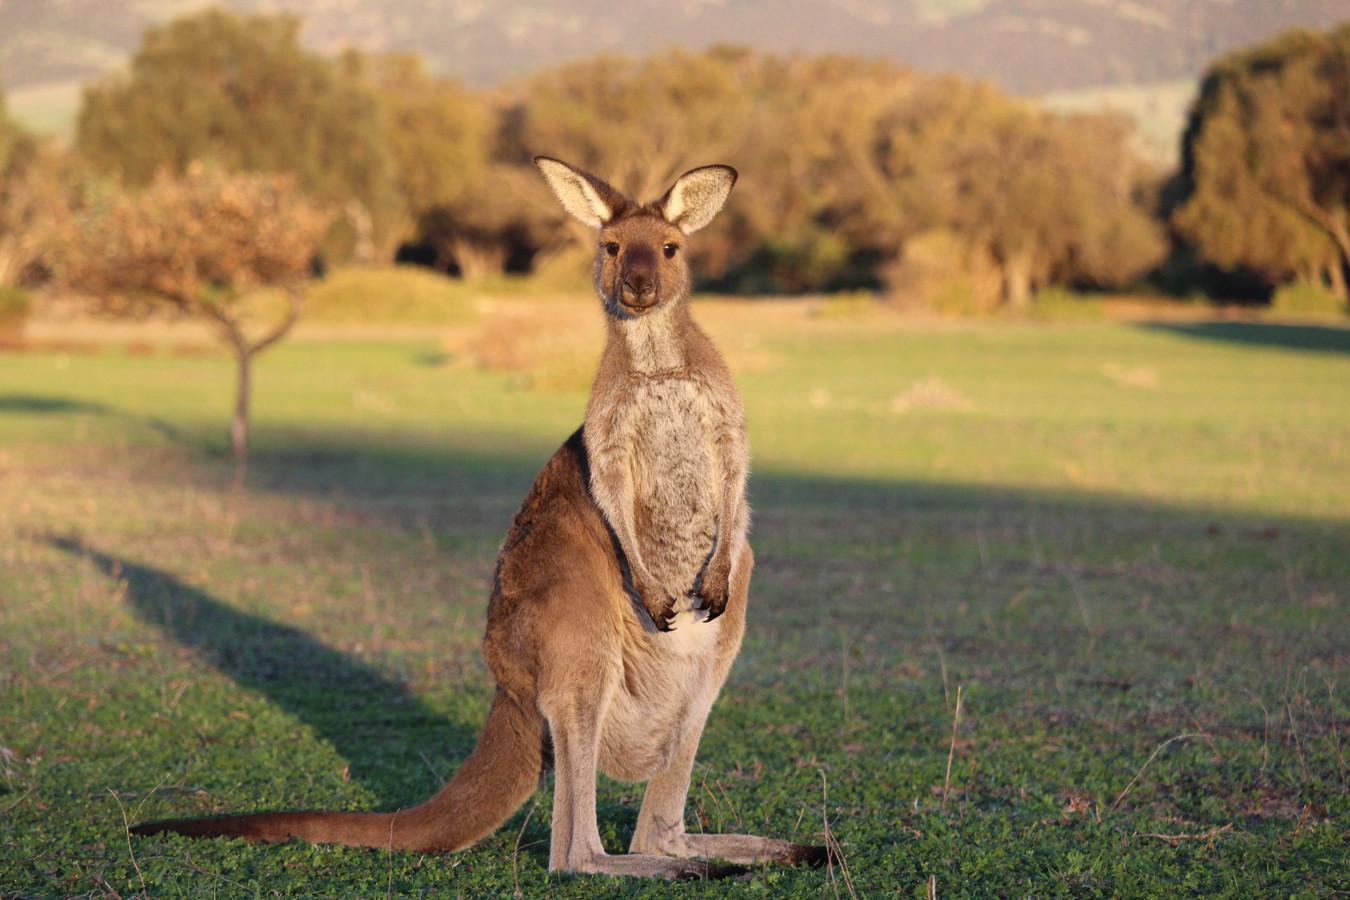 Zolang bedrijven kangoeroeproducten blijven verkopen blijft de jacht op deze dieren voortduren, stelt World Animal Protection.